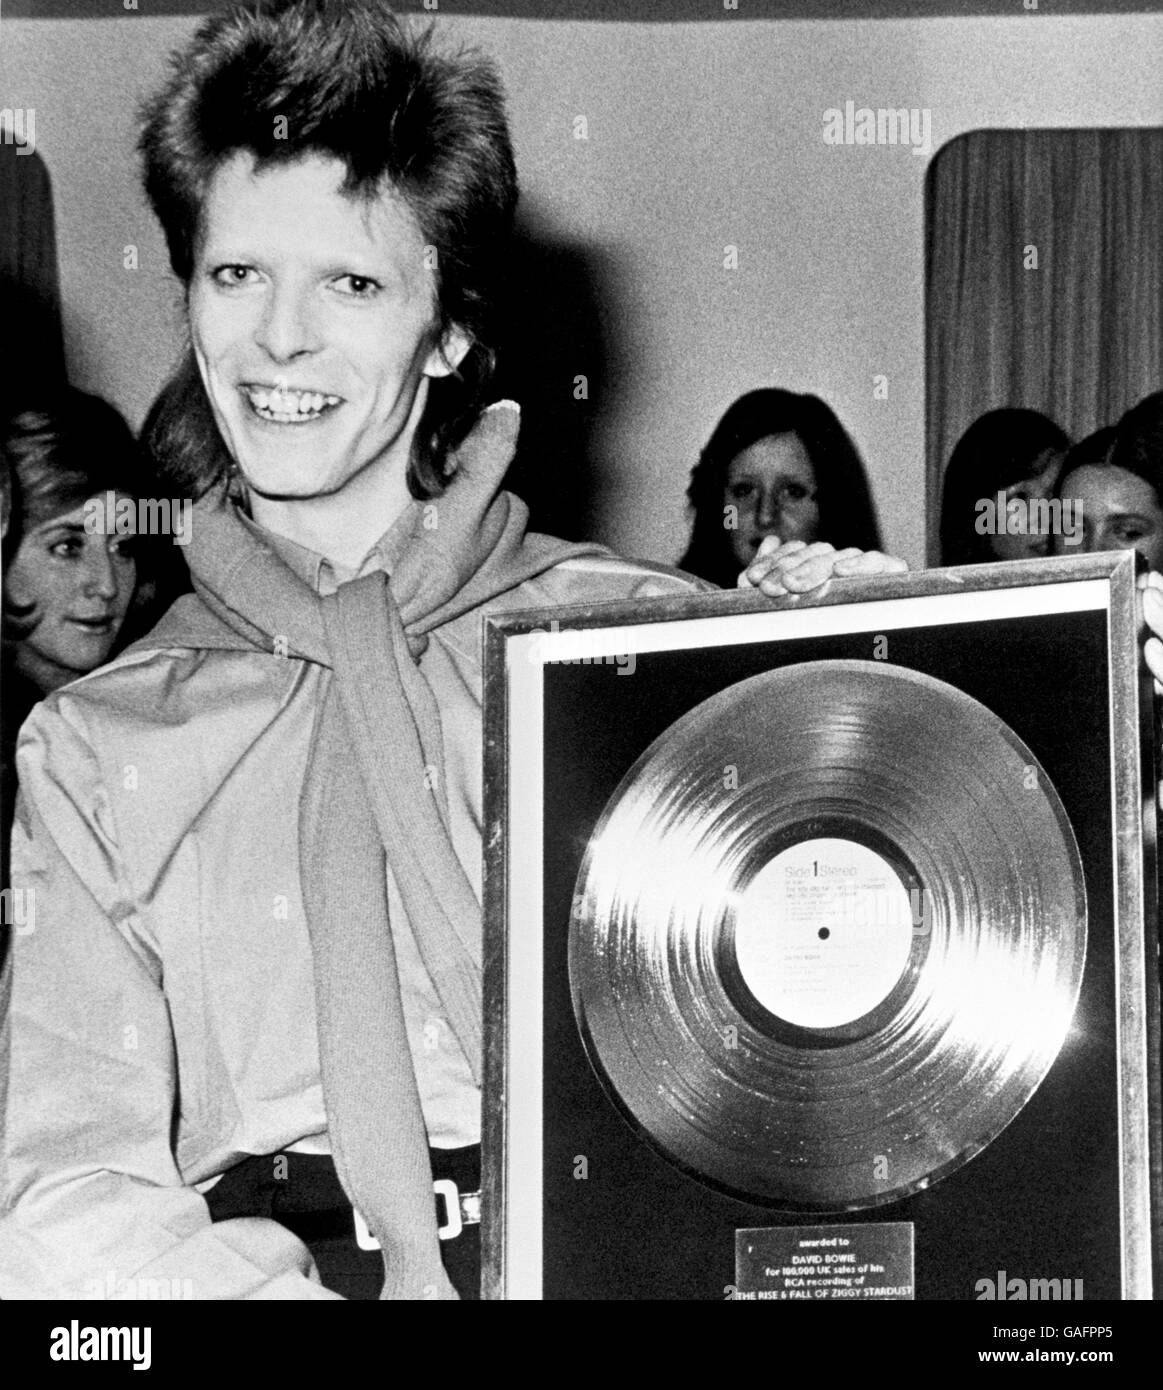 Musique - David Bowie - 1973. L'artiste solo David Bowie avec son disque d'or. Banque D'Images